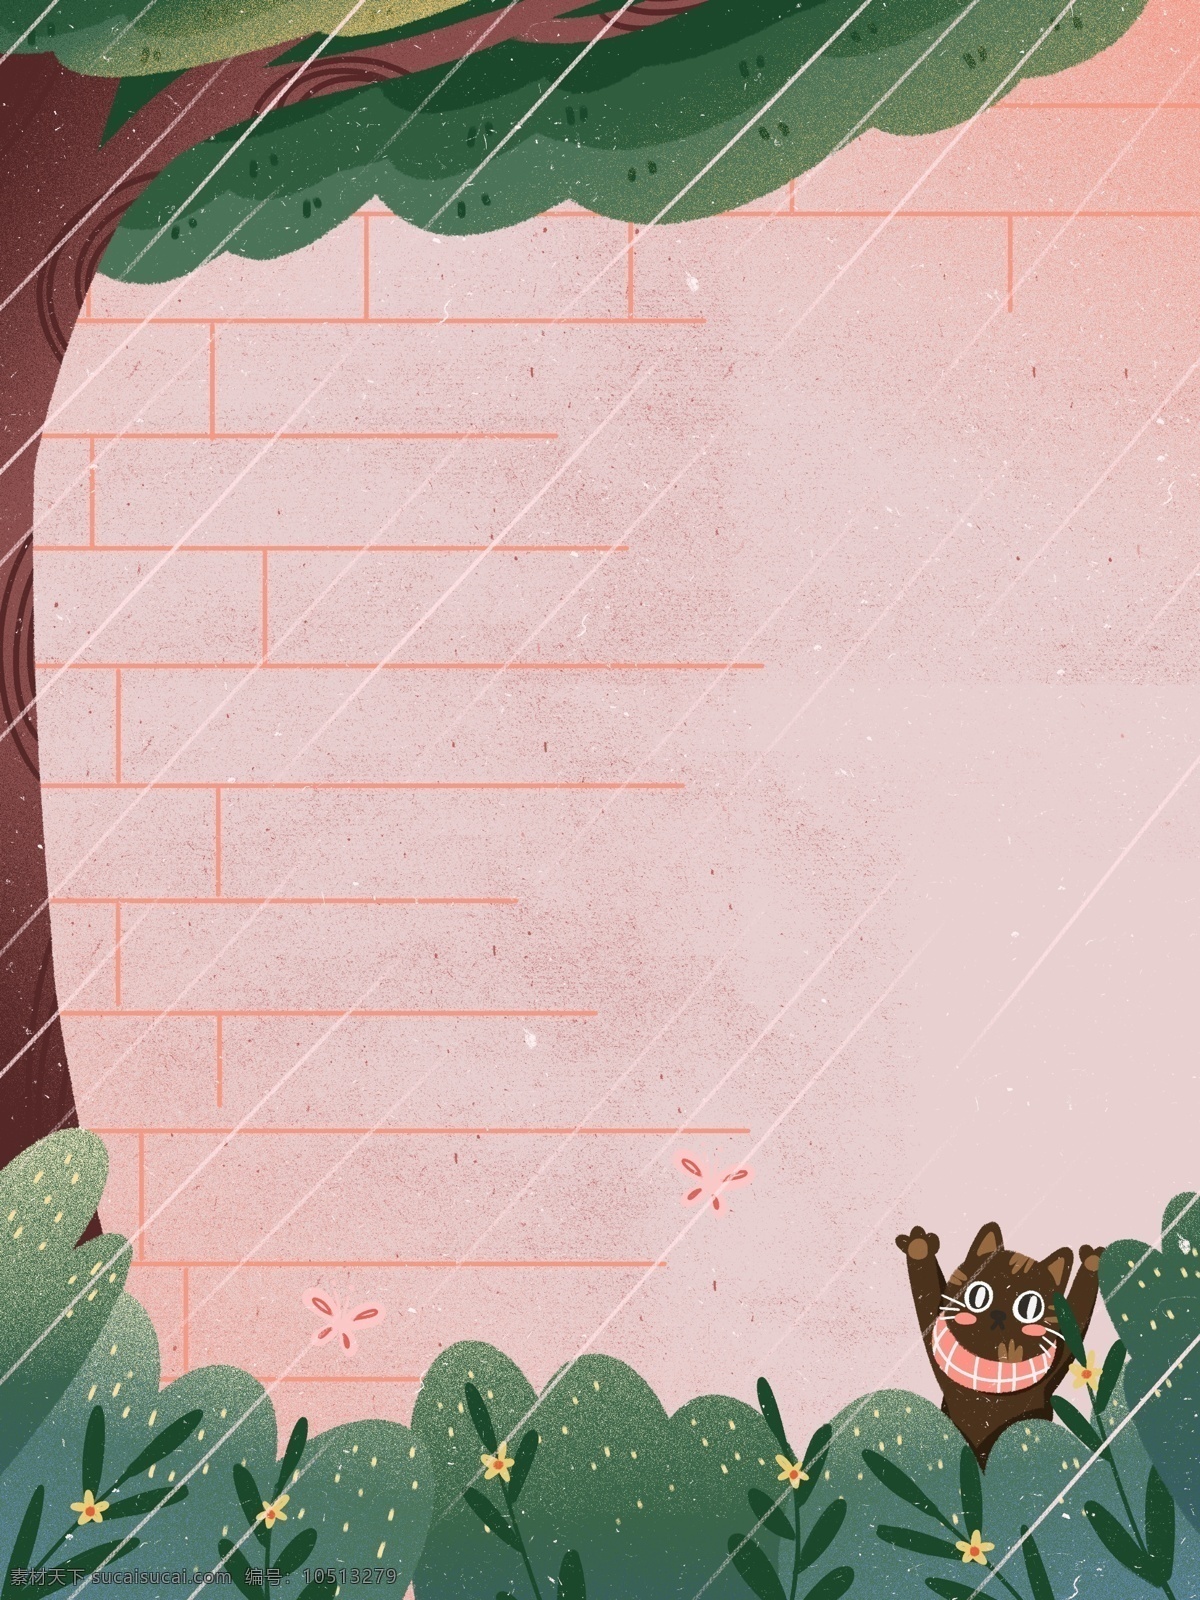 手绘 雨水 节气 树下 猫咪 背景 清新 手绘背景 促销背景 创意 下雨 雨水节气 背景设计 彩绘背景 通用背景 特邀背景 背景展板图